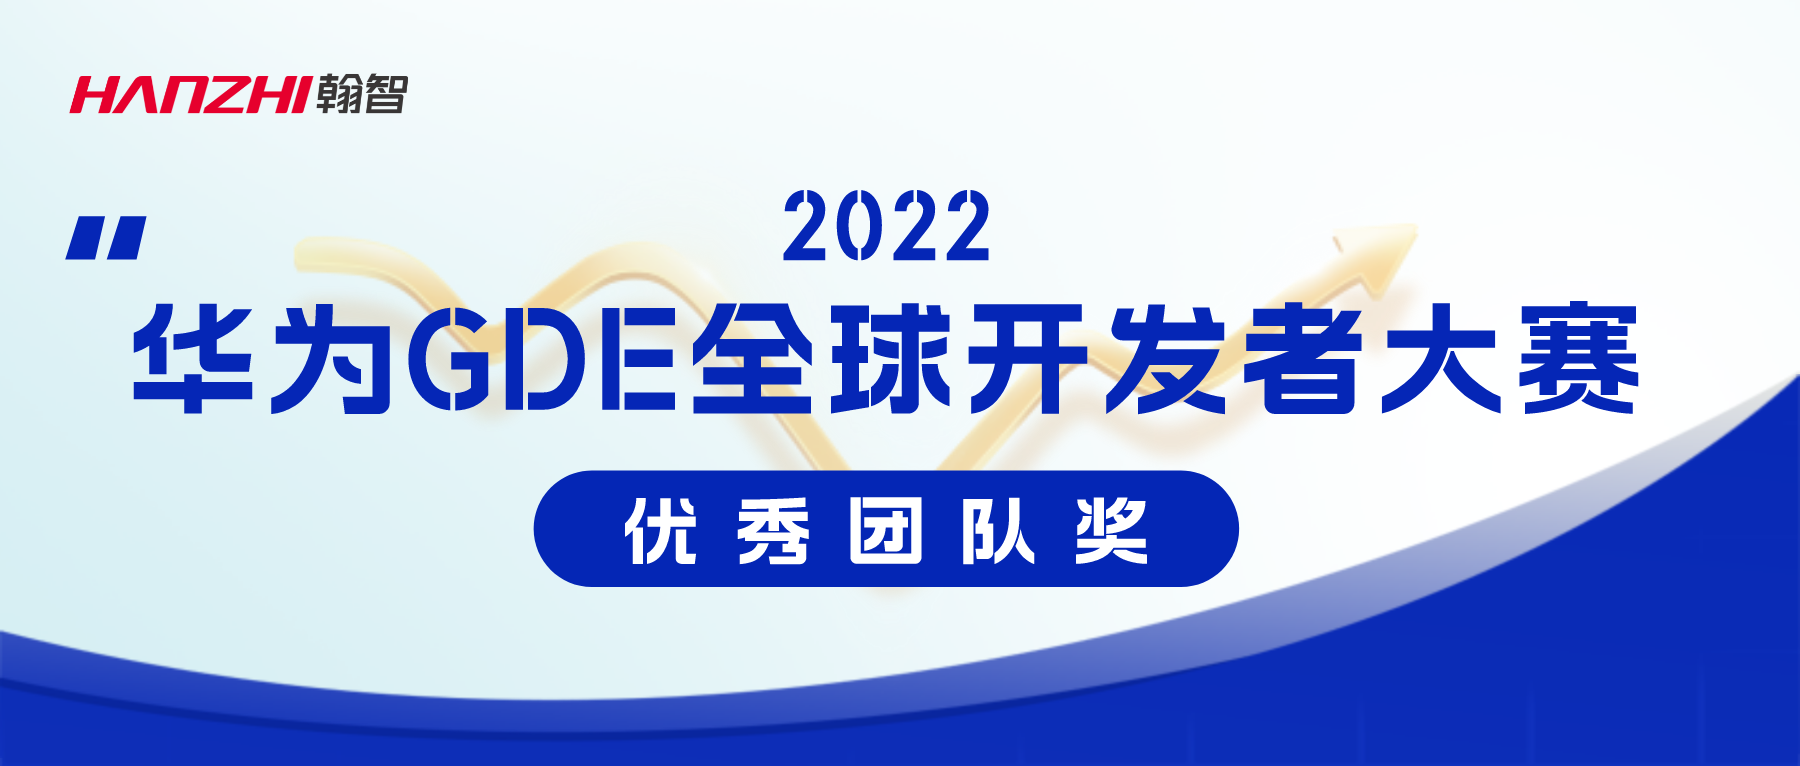 喜讯 | 翰智“电商平台消费调查报告分析机器人”项目获2022华为GDE全球开发者大赛团队优秀作品奖